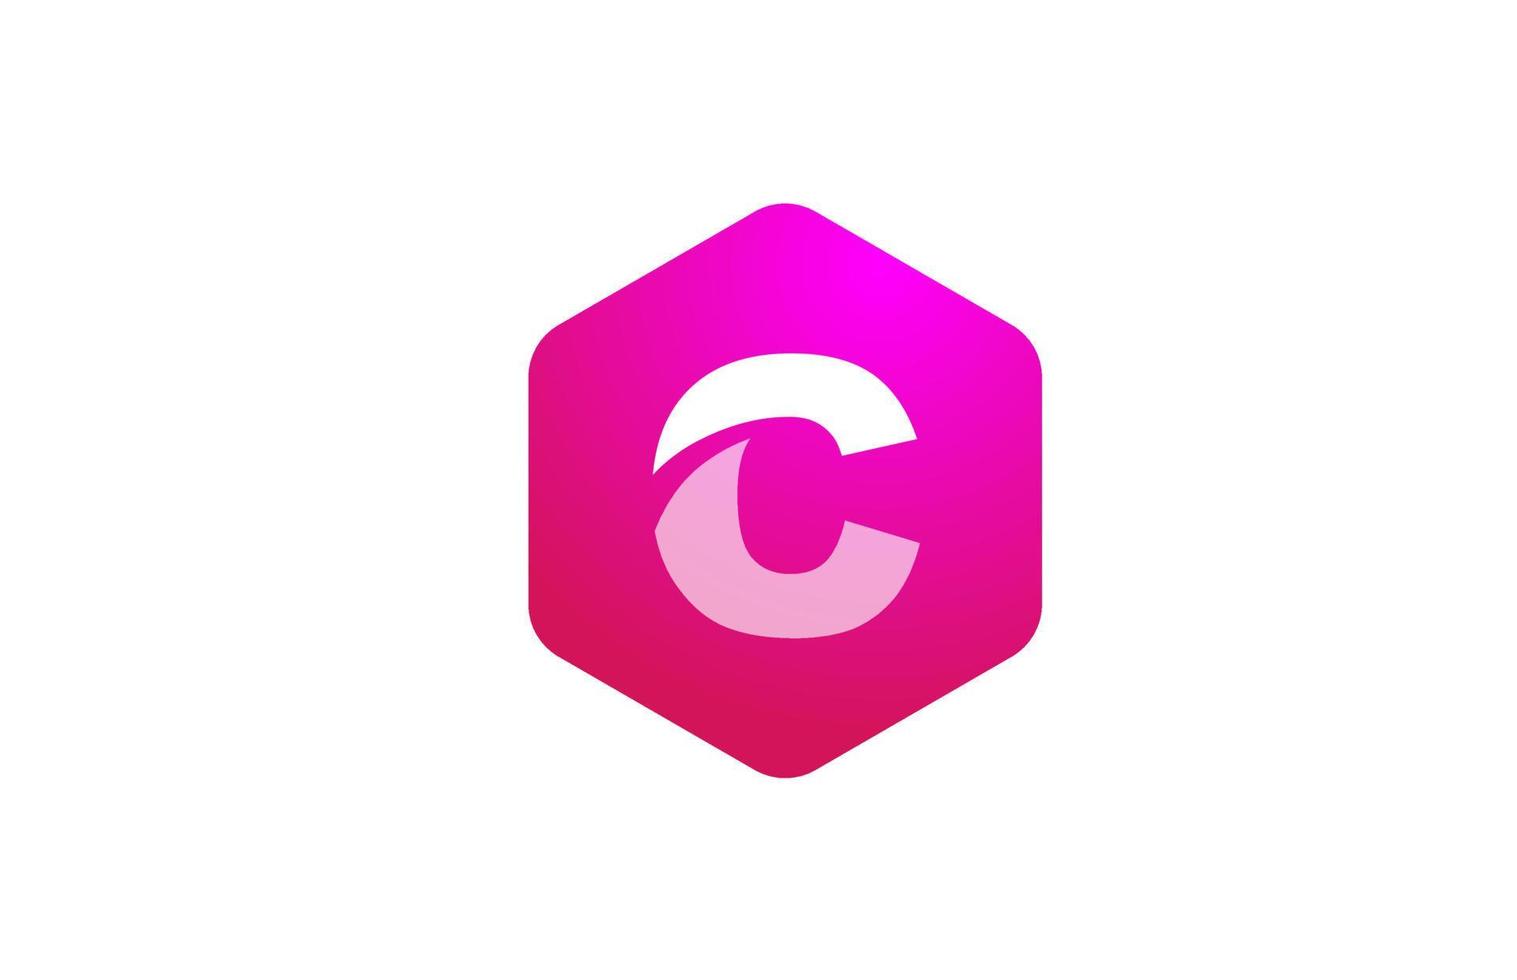 roze witte veelhoek c alfabet letterpictogram logo met modern design voor zaken en bedrijf vector